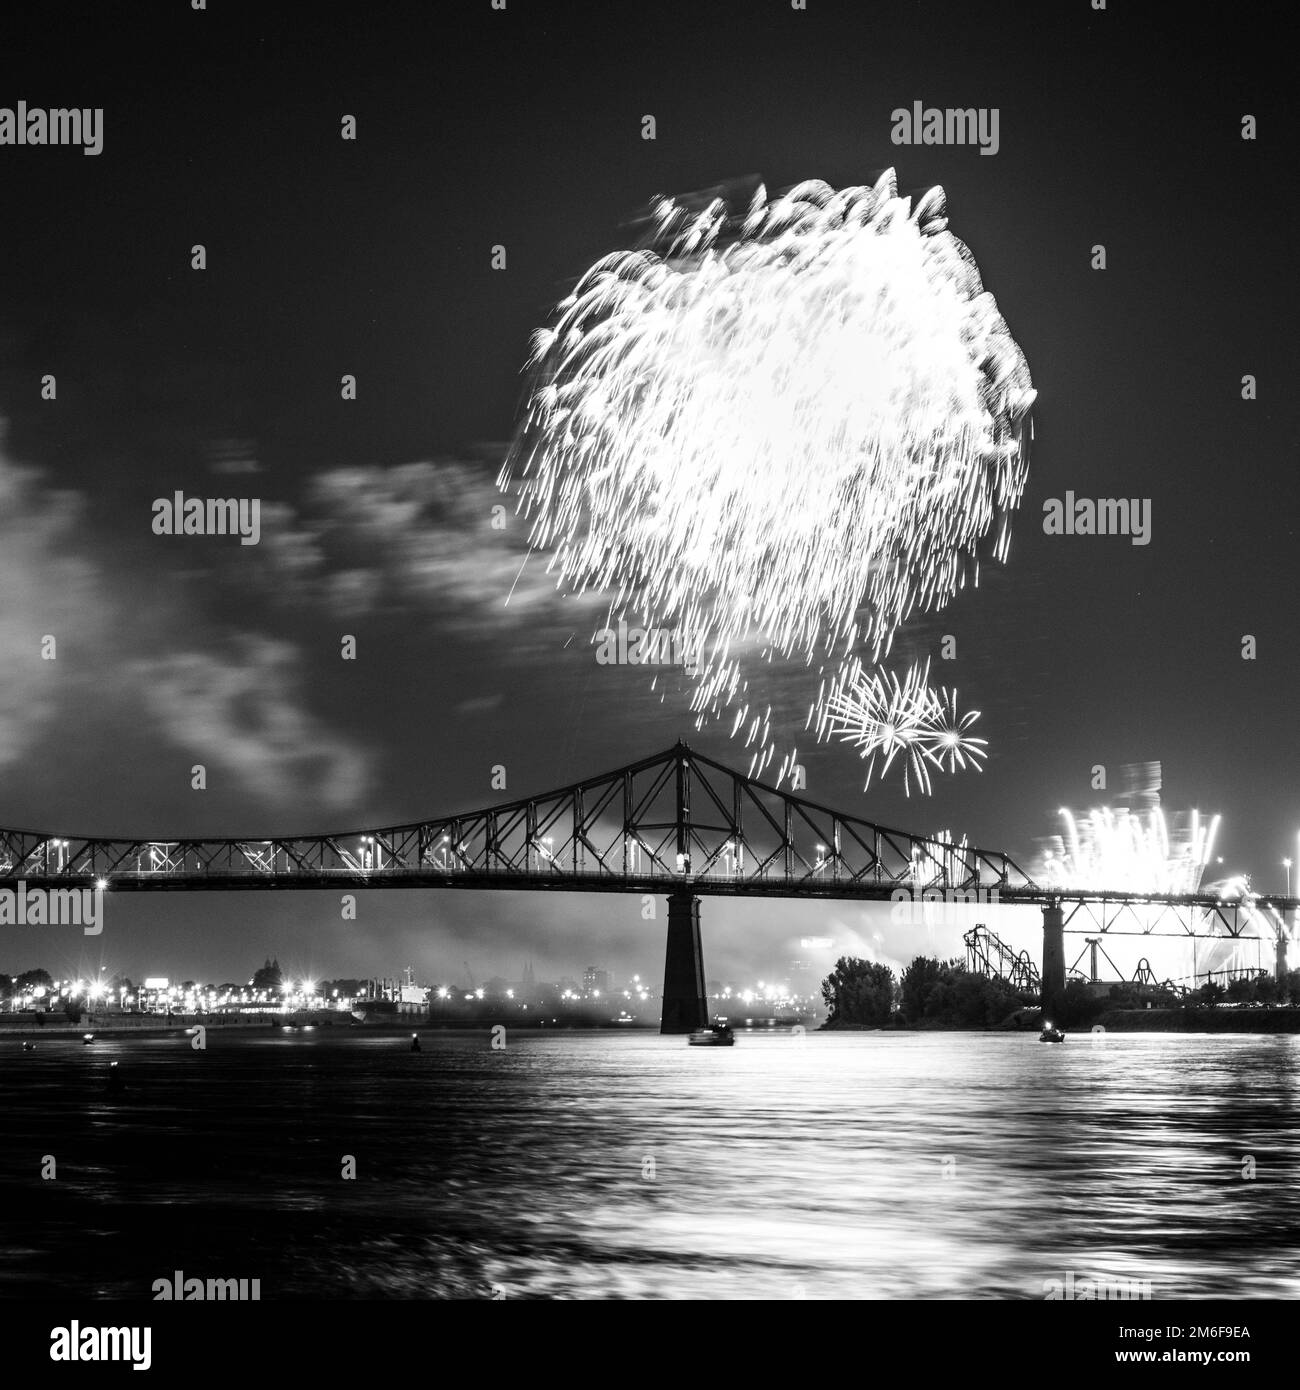 Feuerwerk. Jacques-Cartier Montreal. Feuerwerk mit Reflexionen auf Wasser. Feuerwerk Hintergrund und Platz für Text. Feuerwerk am Himmel. Panorama Feuerwerk Stockfoto